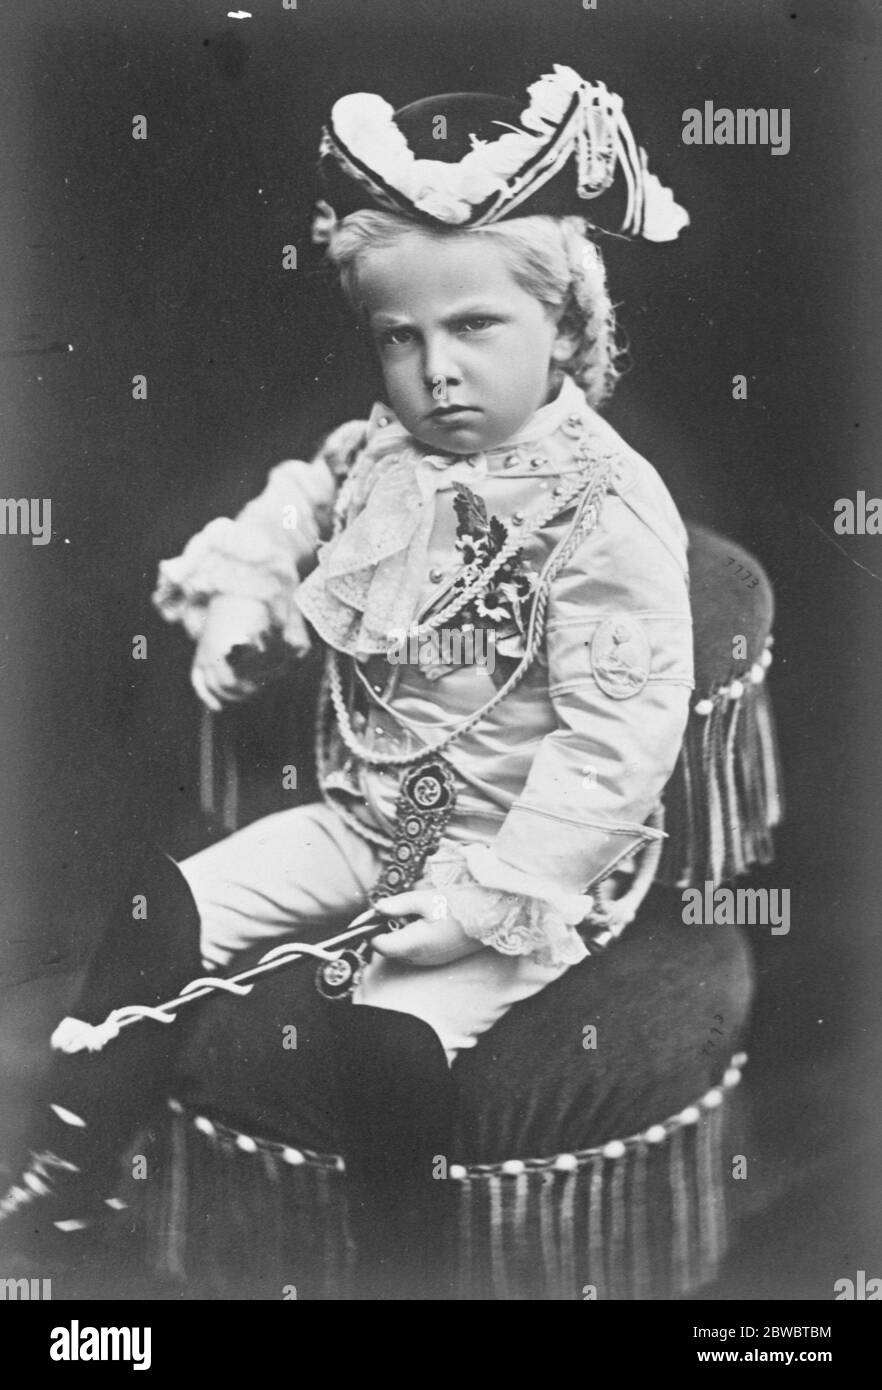 König von Italien, um 25. Jahrestag seiner Aufnahme zu feiern, photogaphed hier in jungen Jahren 5 Juni 1925 Stockfoto